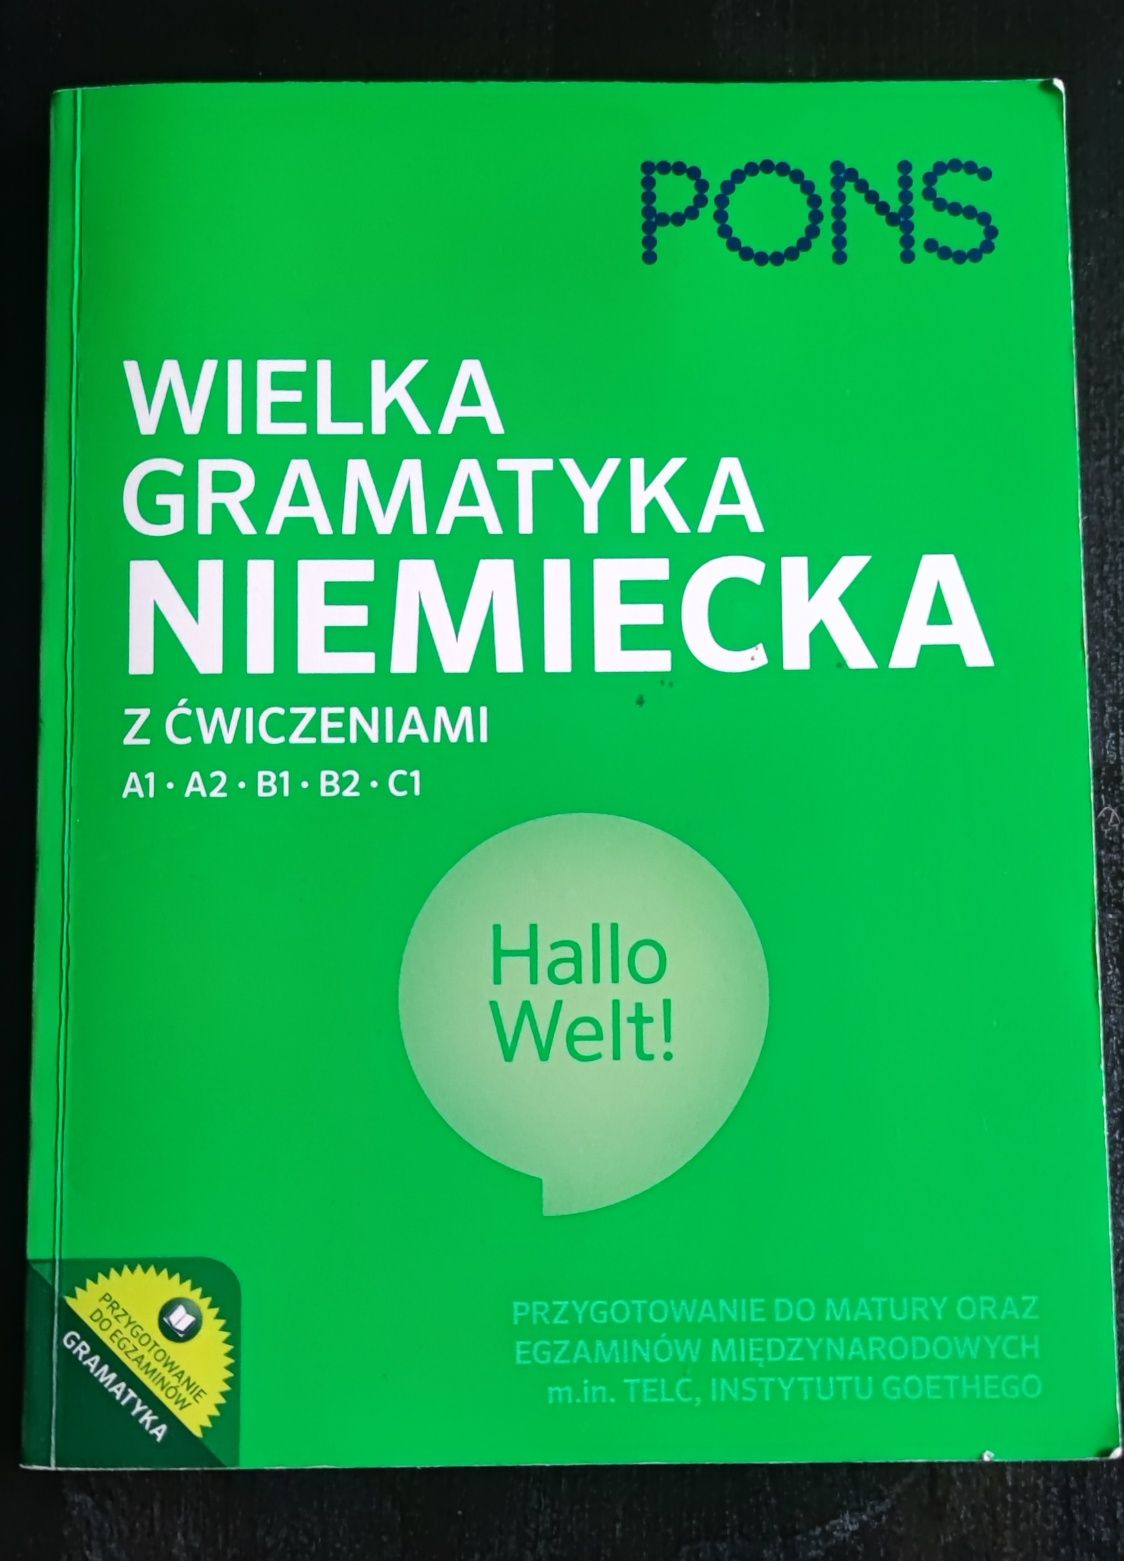 Wielka gramatyka niemiecka PONS